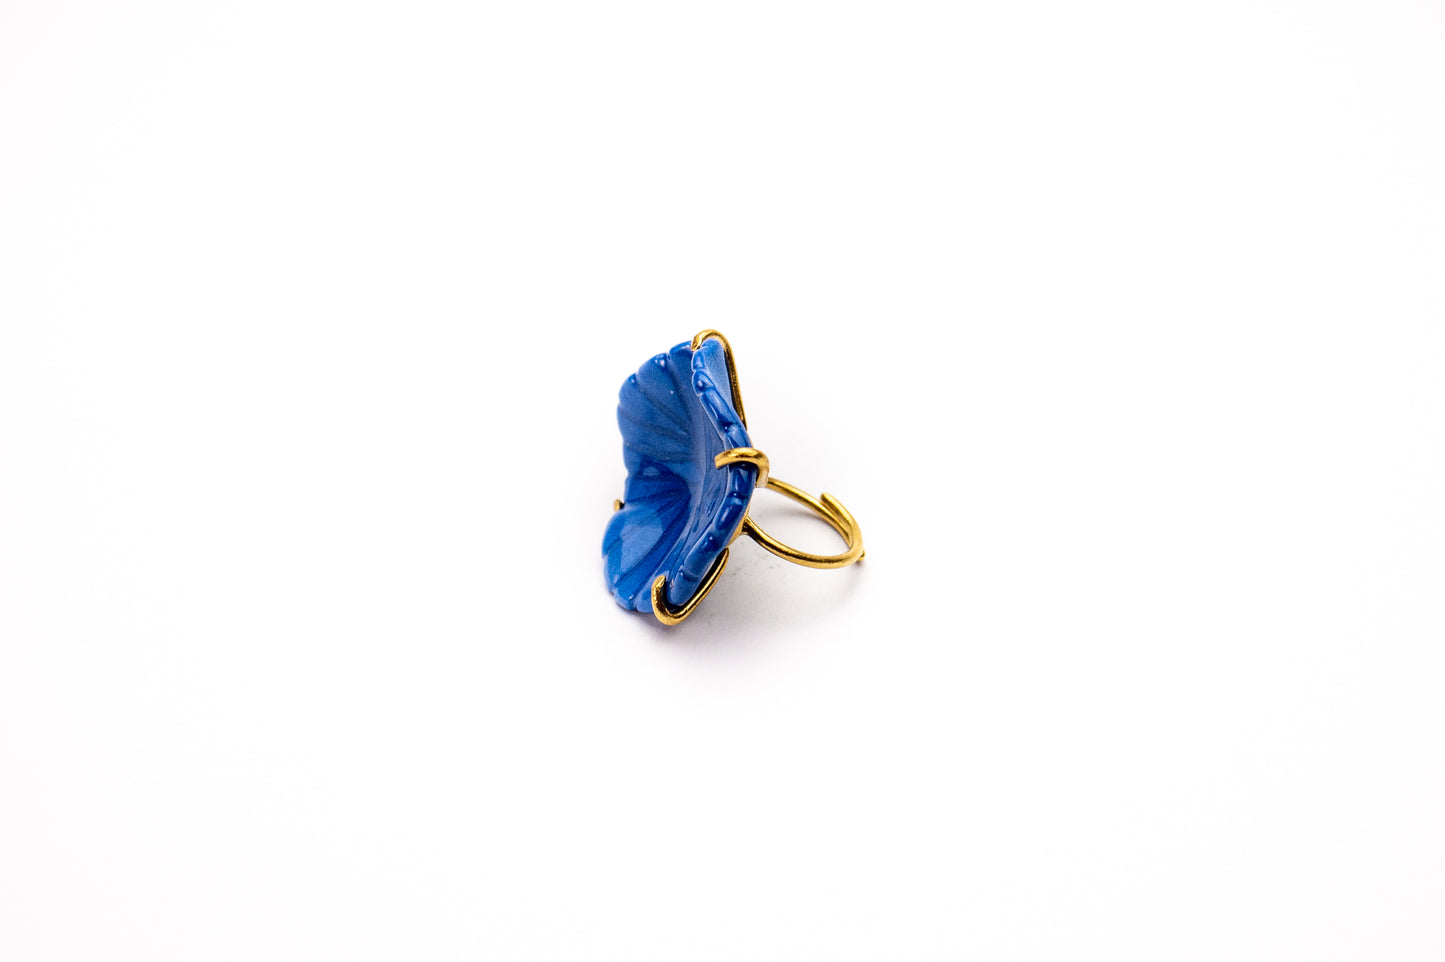 Δαχτυλίδι με λουλούδι μπλε πορσελάνης. 